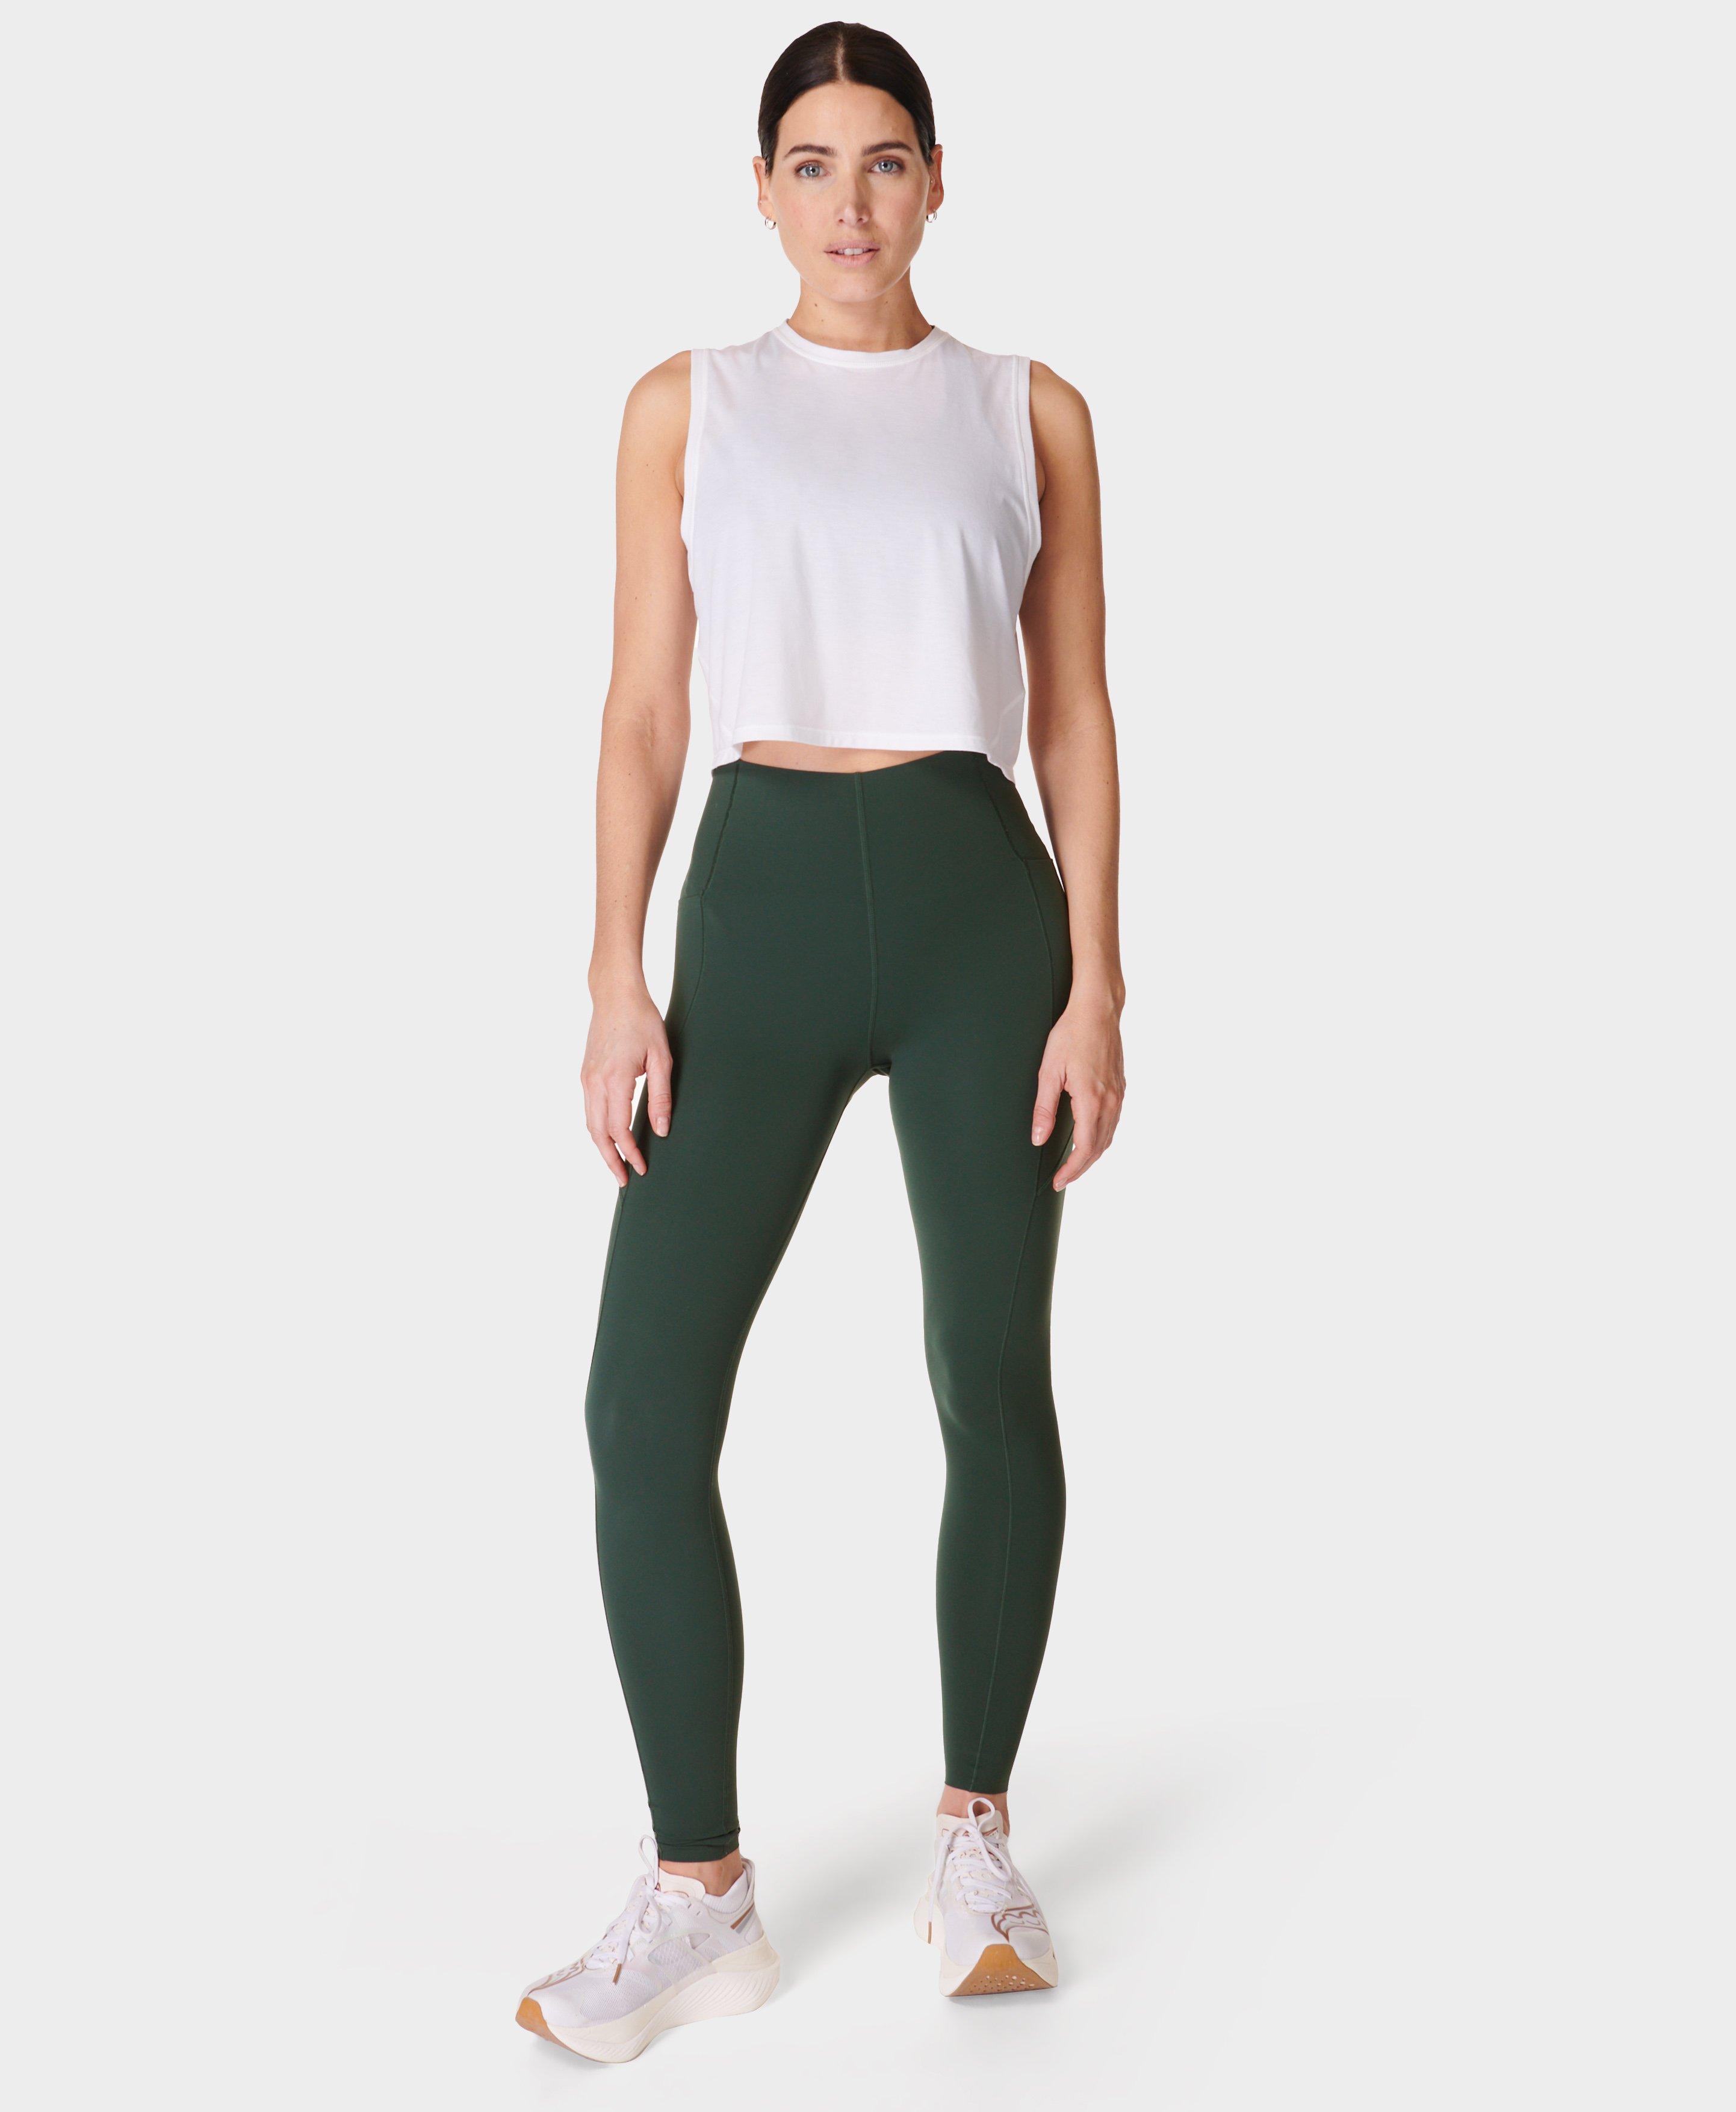 Power UltraSculpt High-Waisted Gym Leggings - Trek Green, Women's Leggings